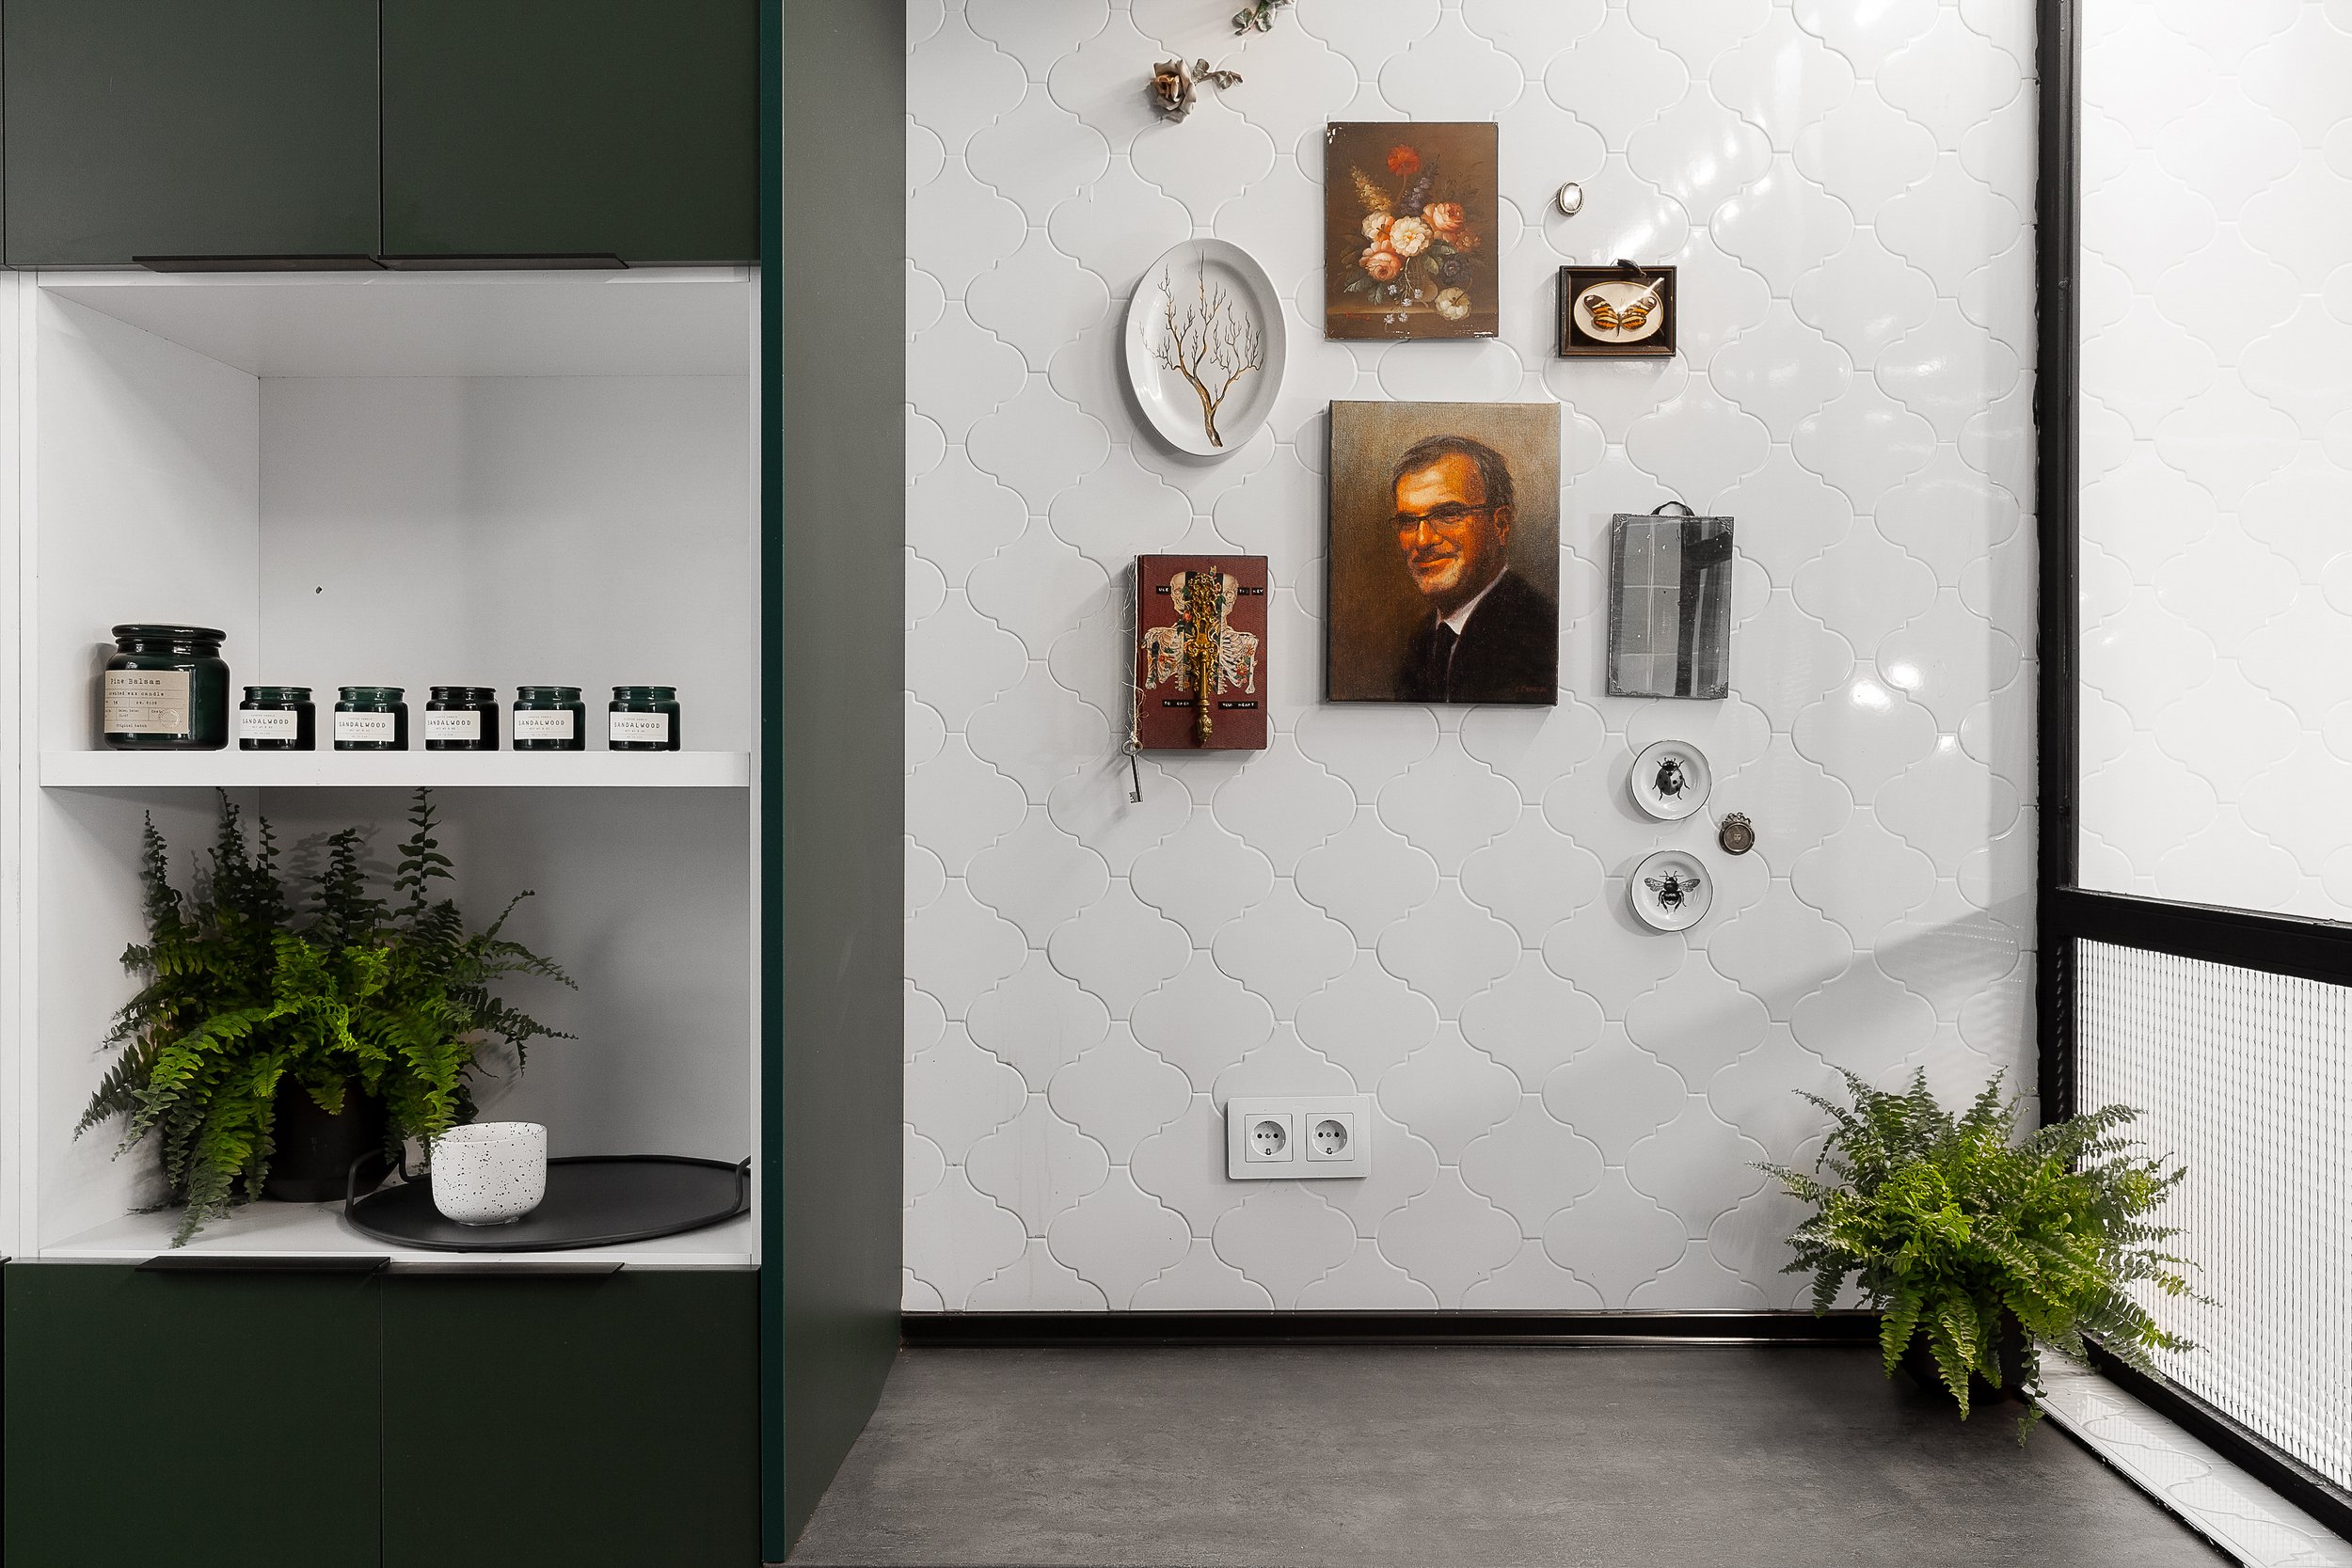 WannaOne Brand Experience Design 2060 Hostel Madrid - Kitchen 3jpg.jpg